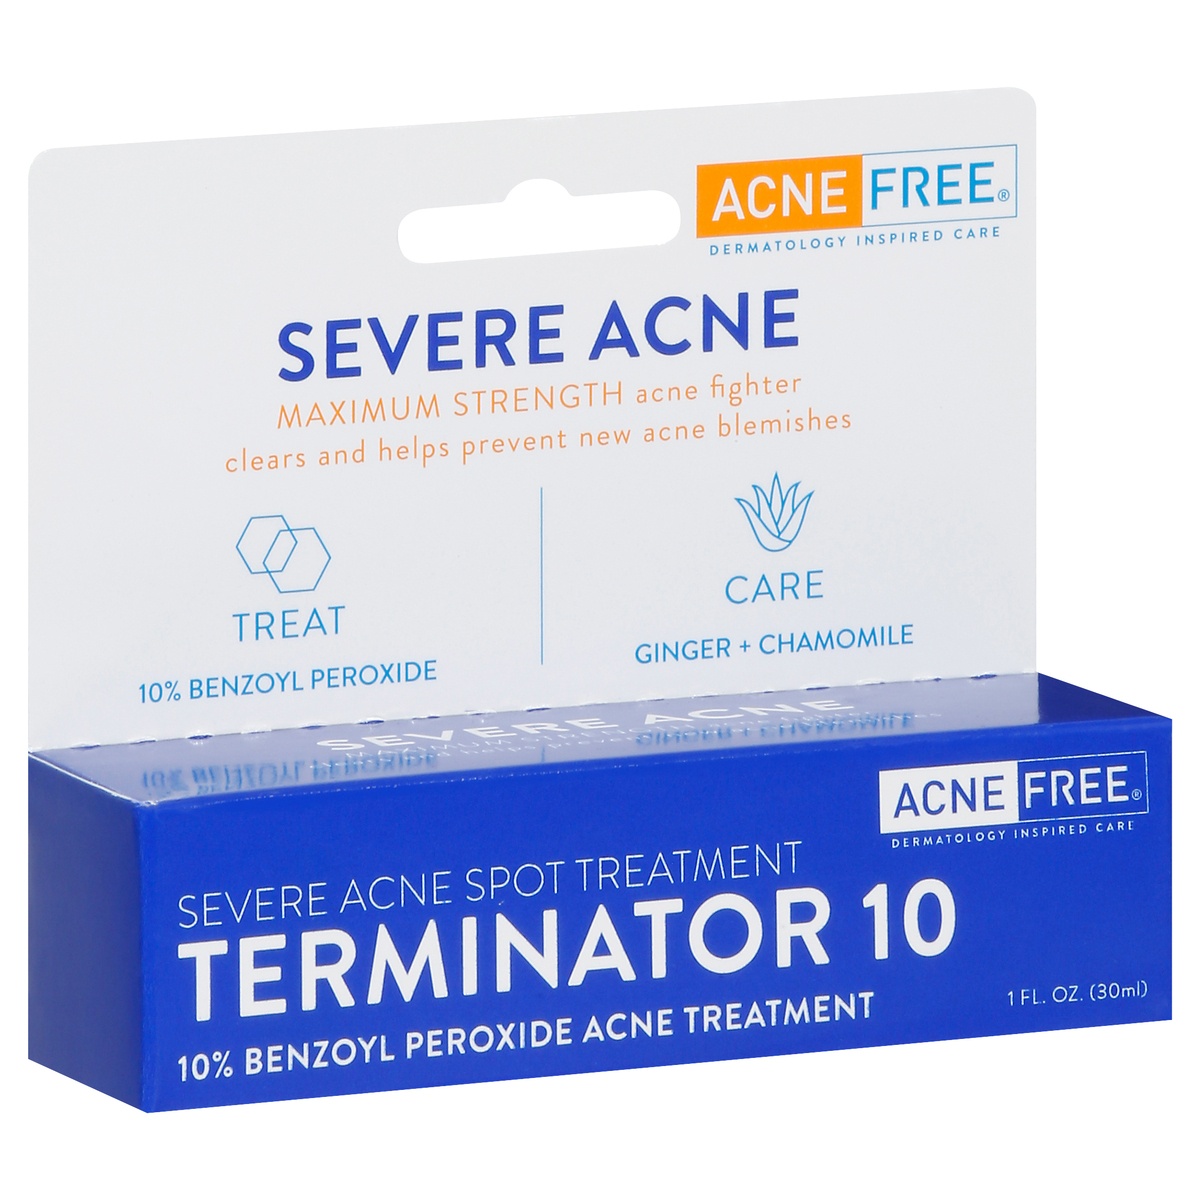 slide 1 of 1, AcneFree Terminator 10 Maximum Strength Severe Acne Spot Treatment 1 fl oz, 1 fl oz